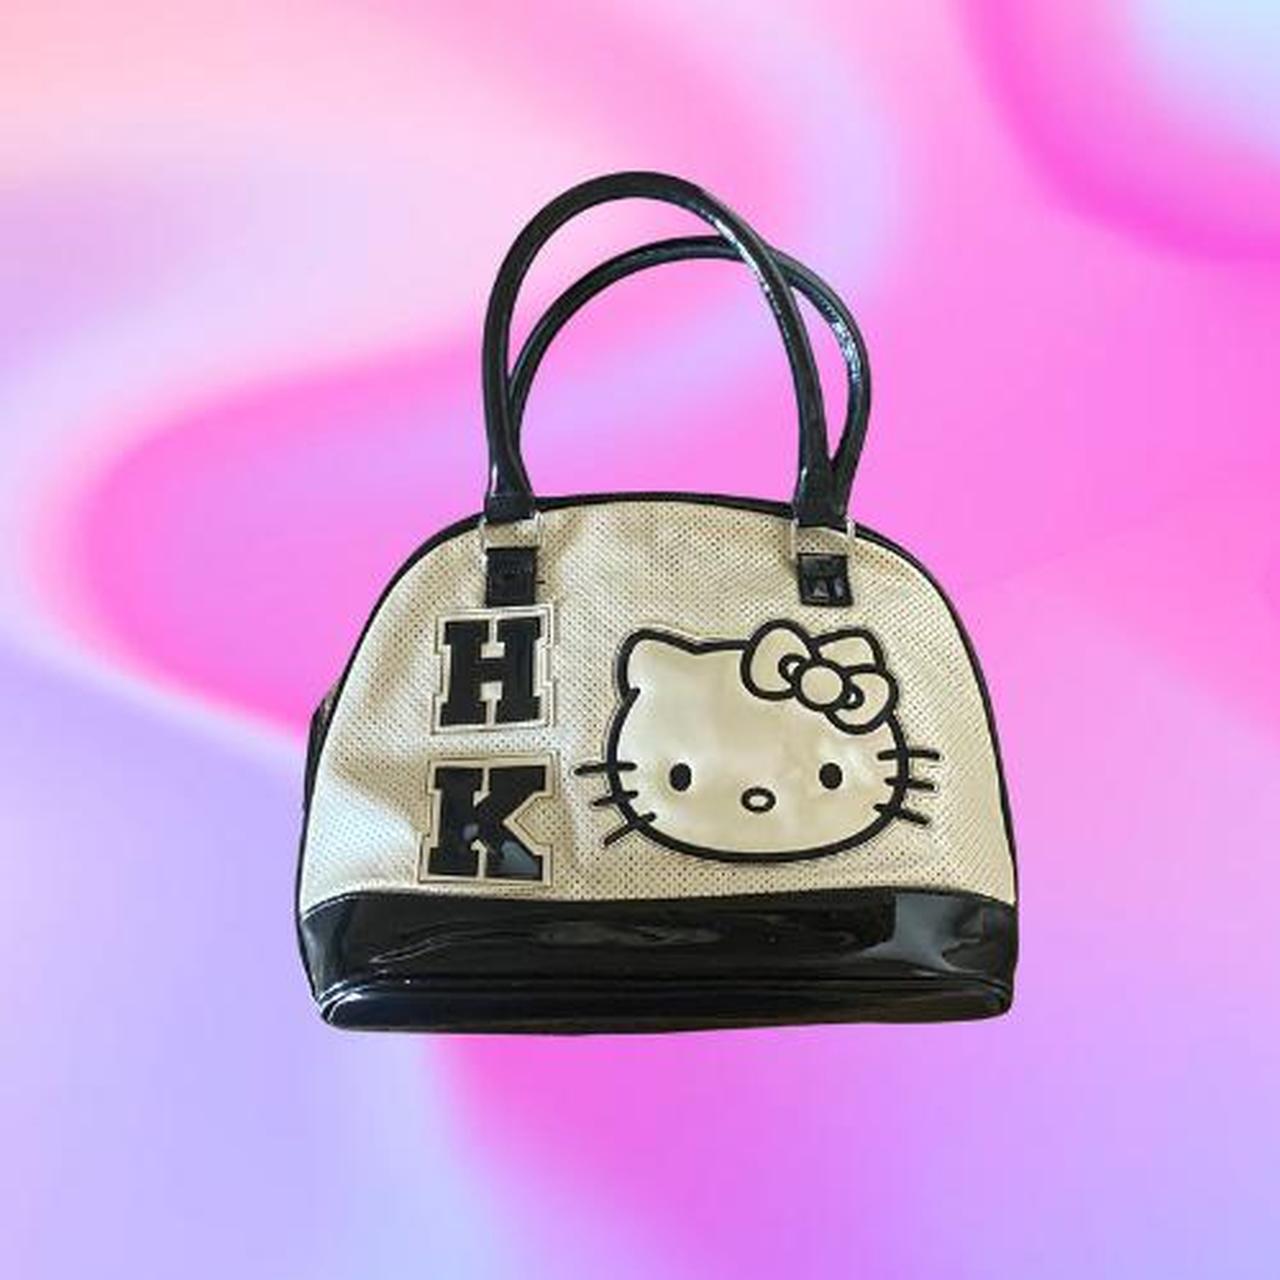 Hello Kitty Bag Y2k New Vintage Brown Women's Bag Cartoon Printed